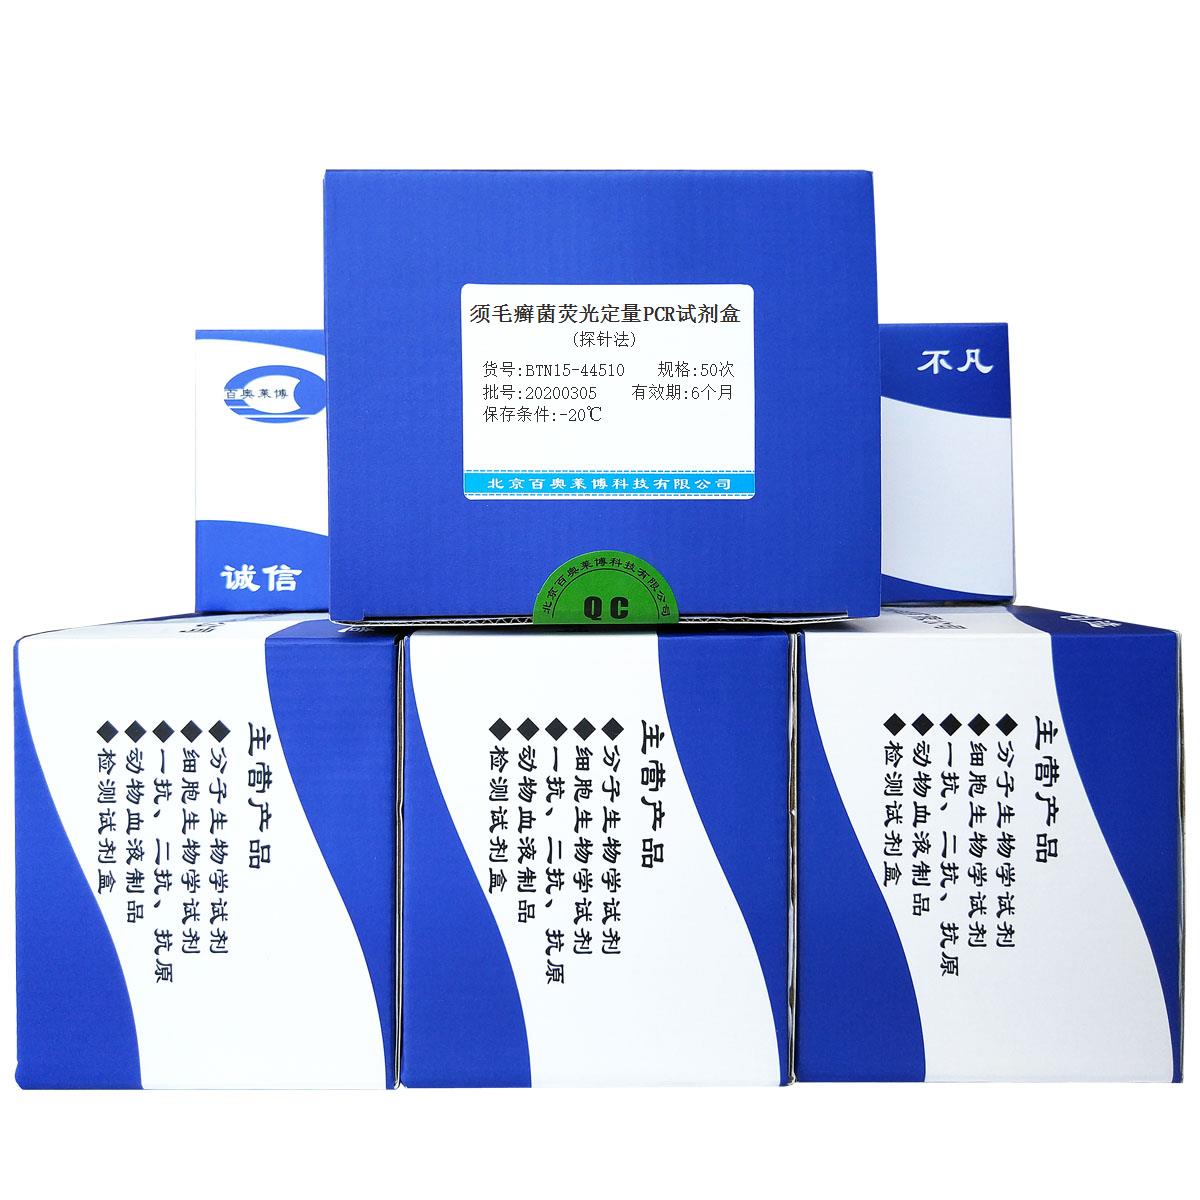 须毛癣菌荧光定量PCR试剂盒(探针法)北京厂家